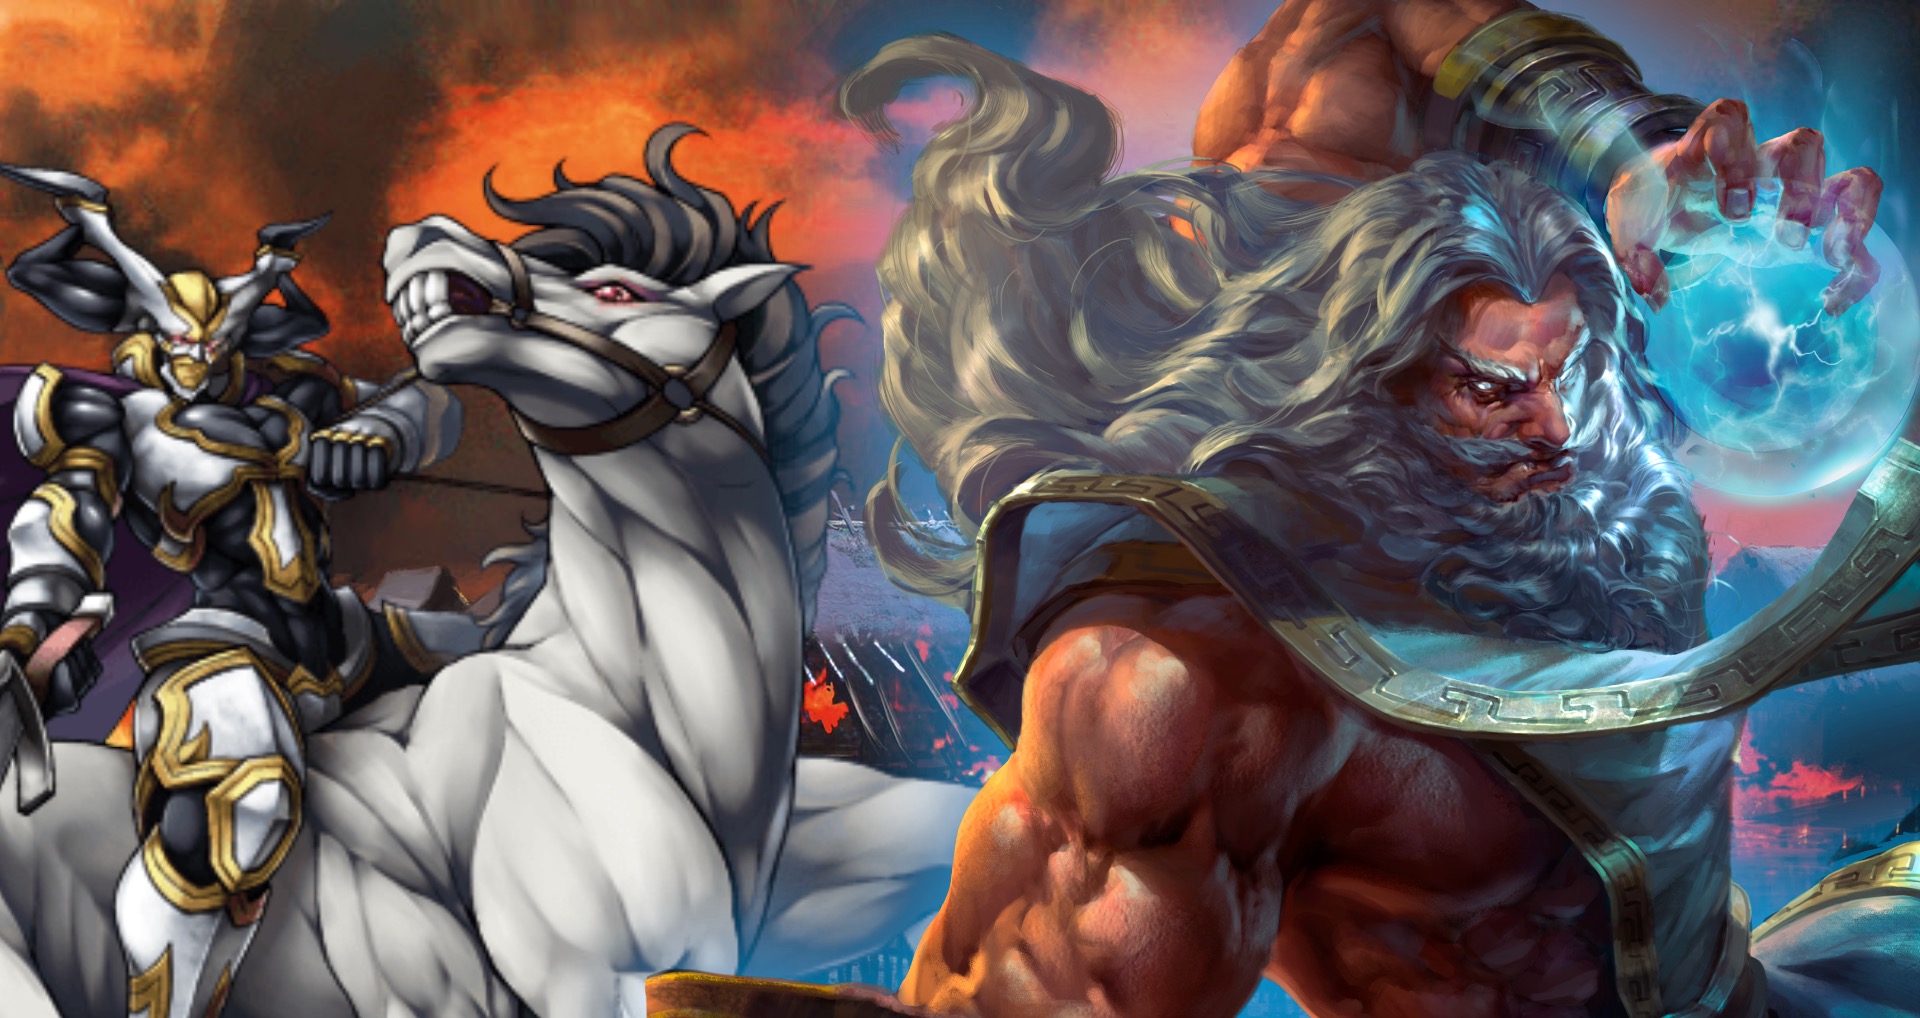 Match-ups: Odin vs Zeus